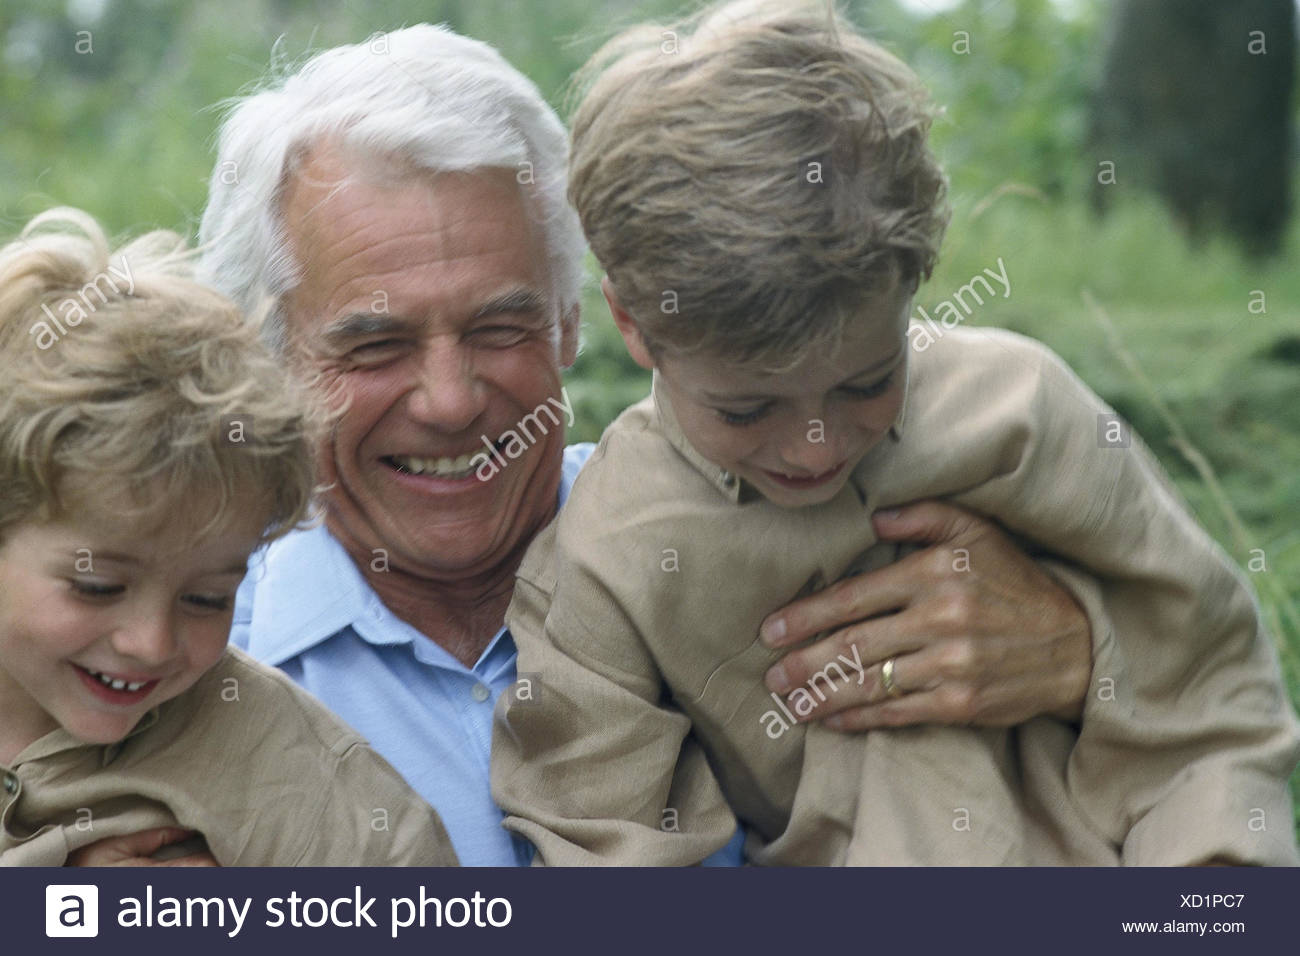 Résultat de recherche d'images pour "Rtraites Grand père et petit fils Images"